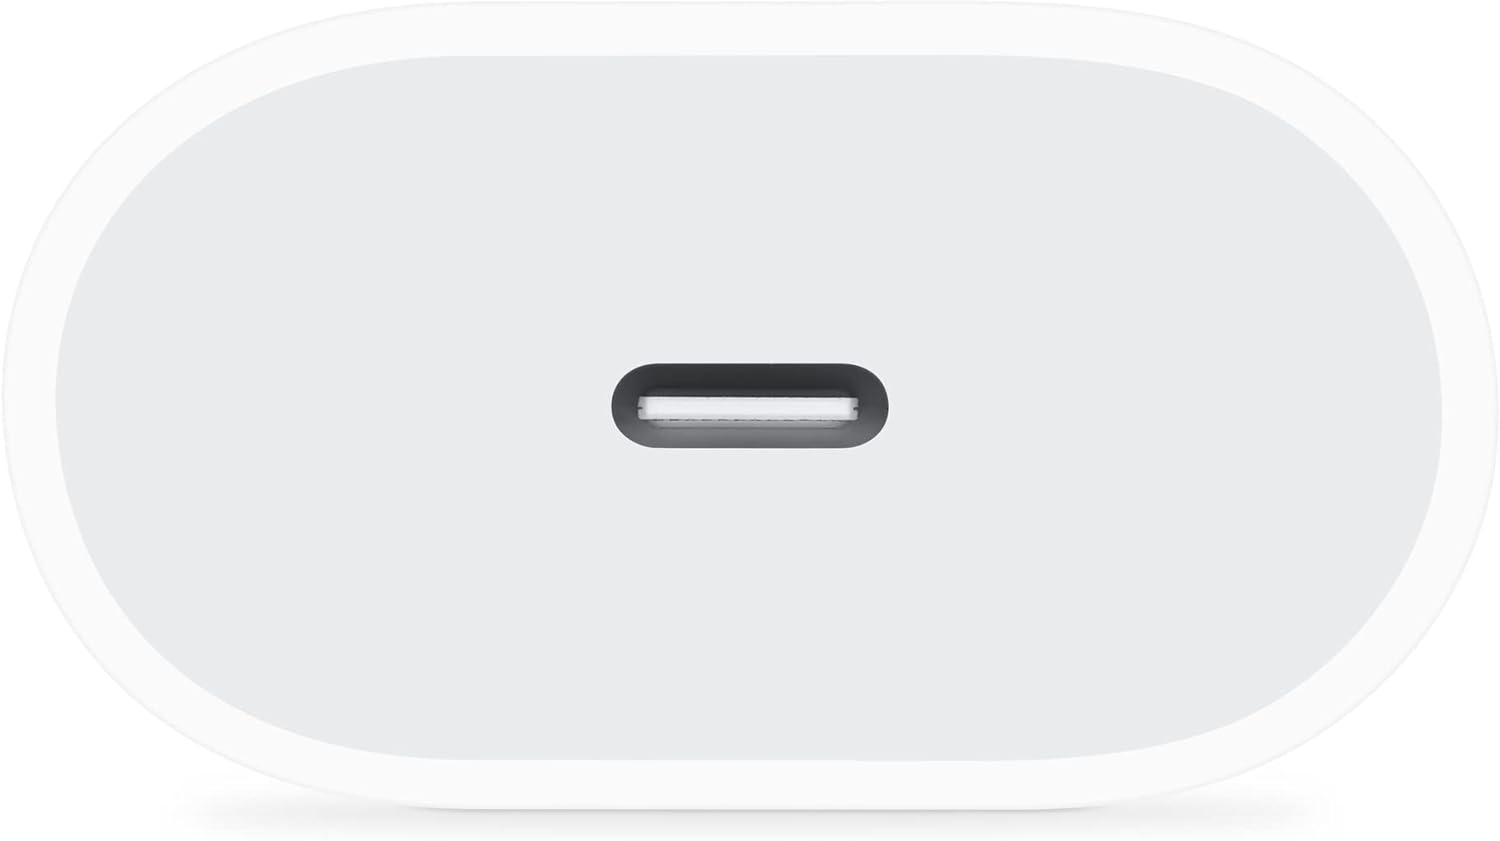 Le Chargeur USB-C 20 W d'Apple : La solution idéale pour charger rapidement votre iPhone 12 !